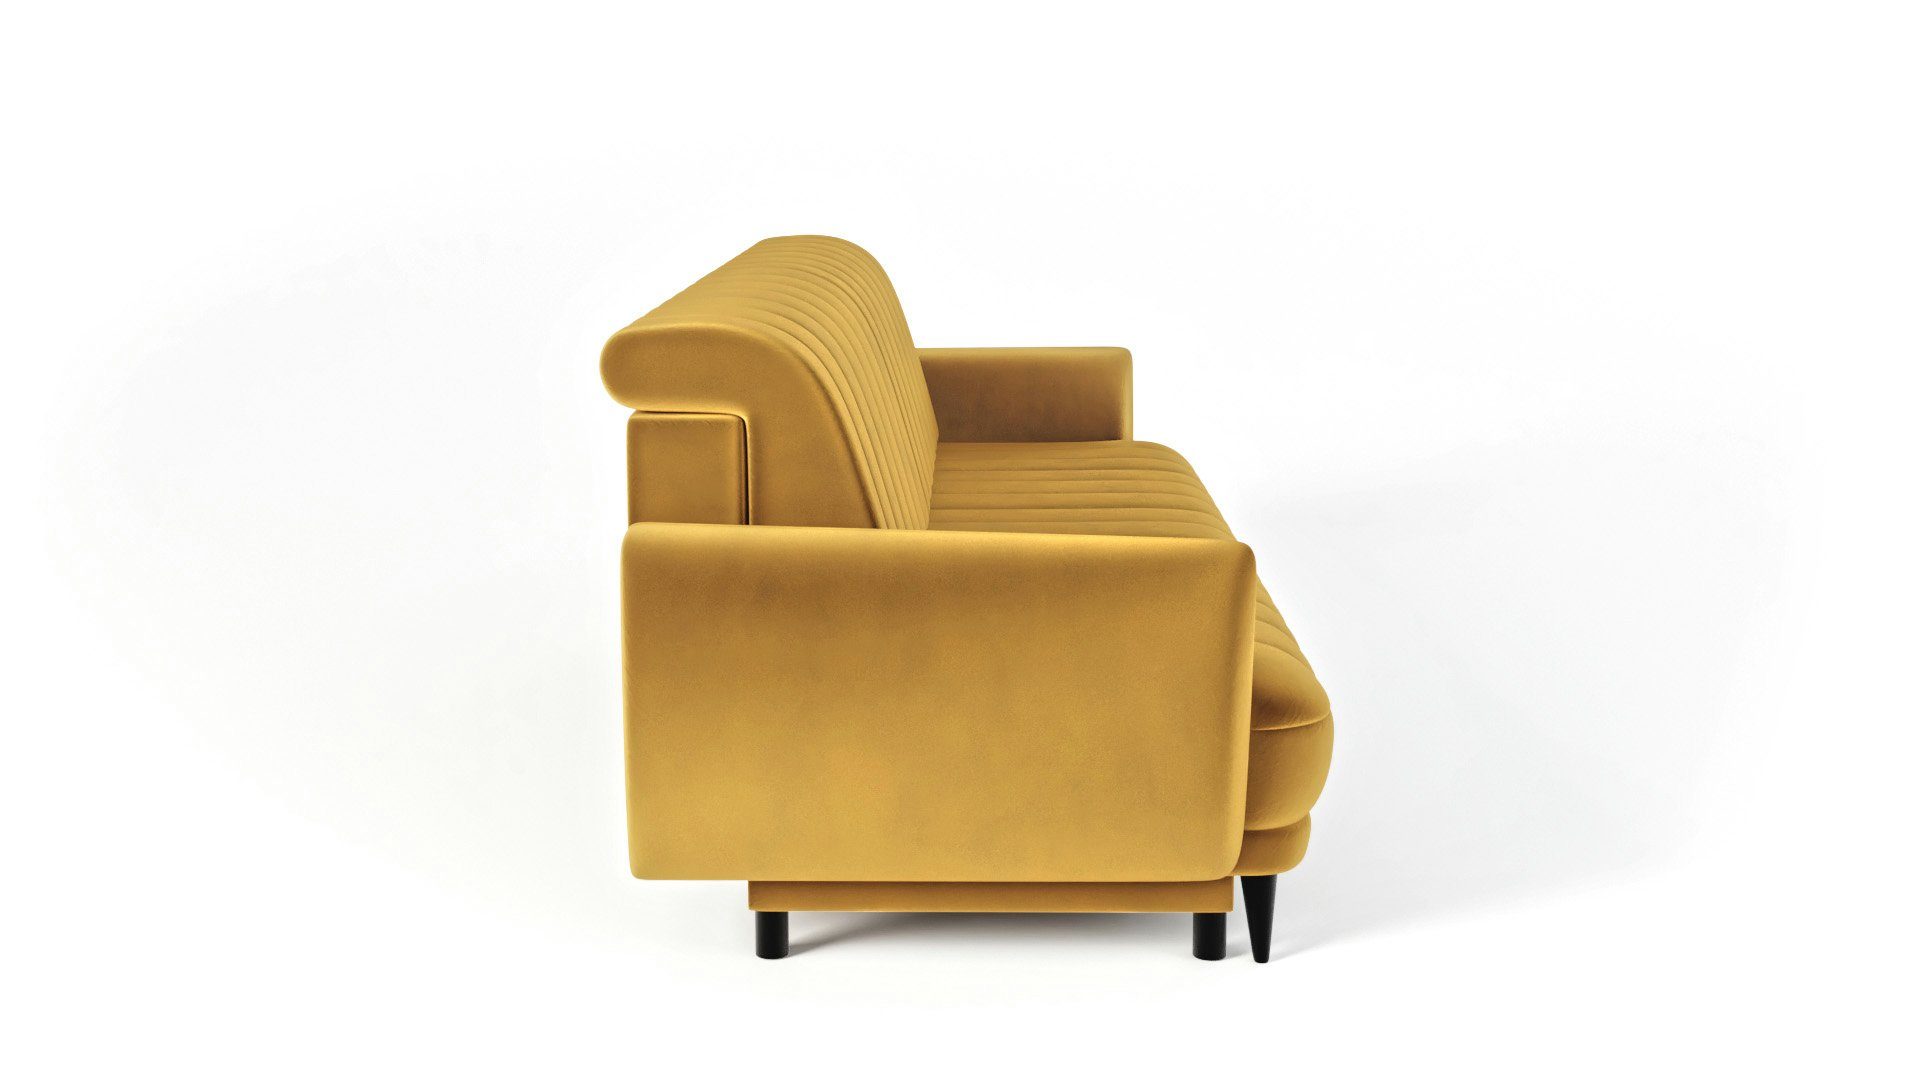 Sofa 3-Sitzer Wohnzimmer Elegantes - - 3 Sofa modernes - bequemes Rolo 3-Sitzer Sofa Gelb Dreisitziges Siblo